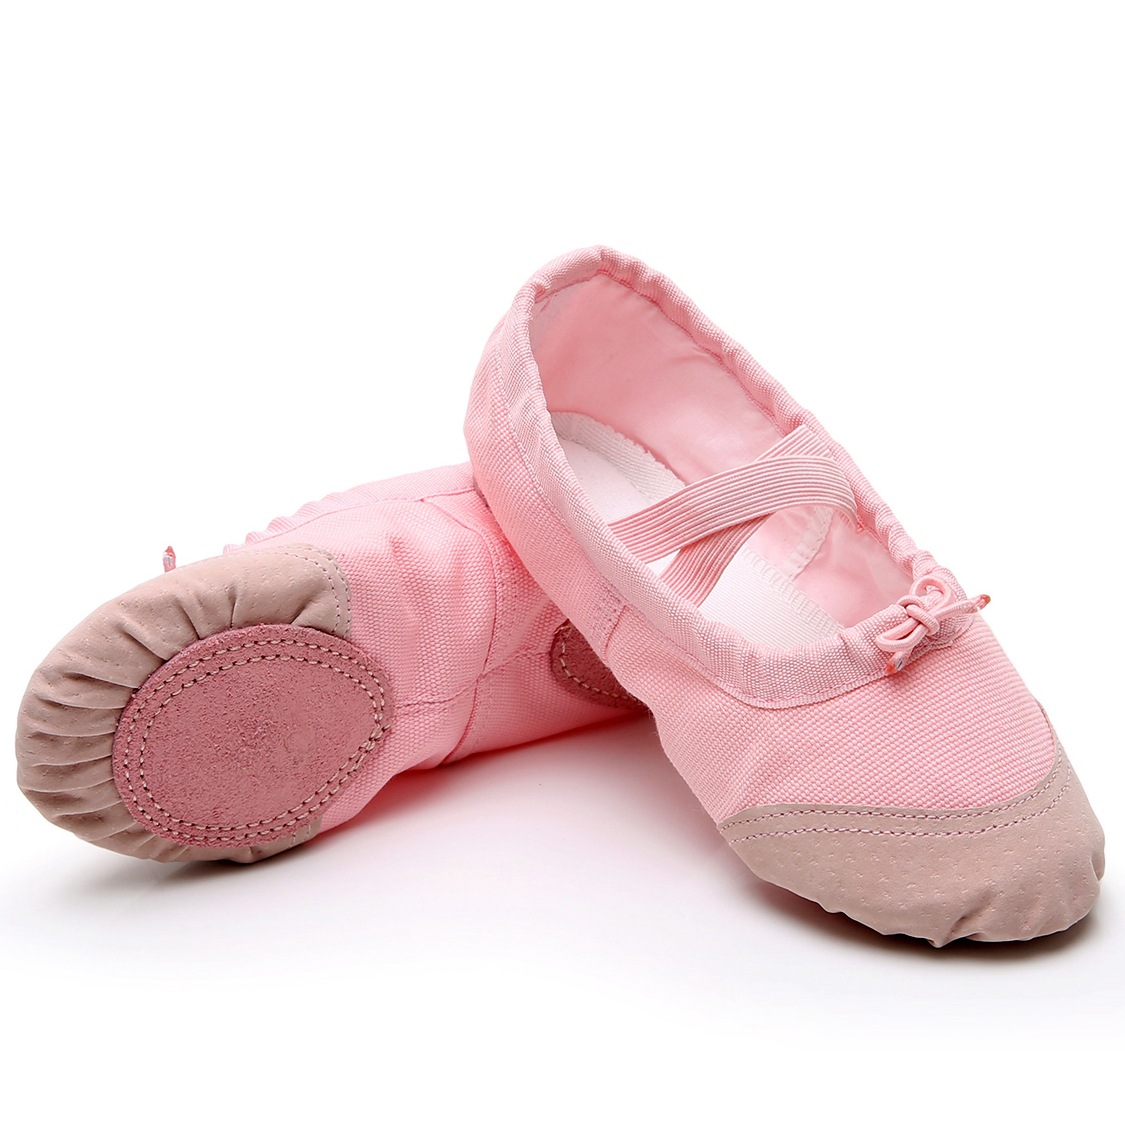 成人幼儿童舞蹈鞋软底练功鞋女童猫爪鞋跳舞鞋瑜伽鞋中国芭蕾舞鞋